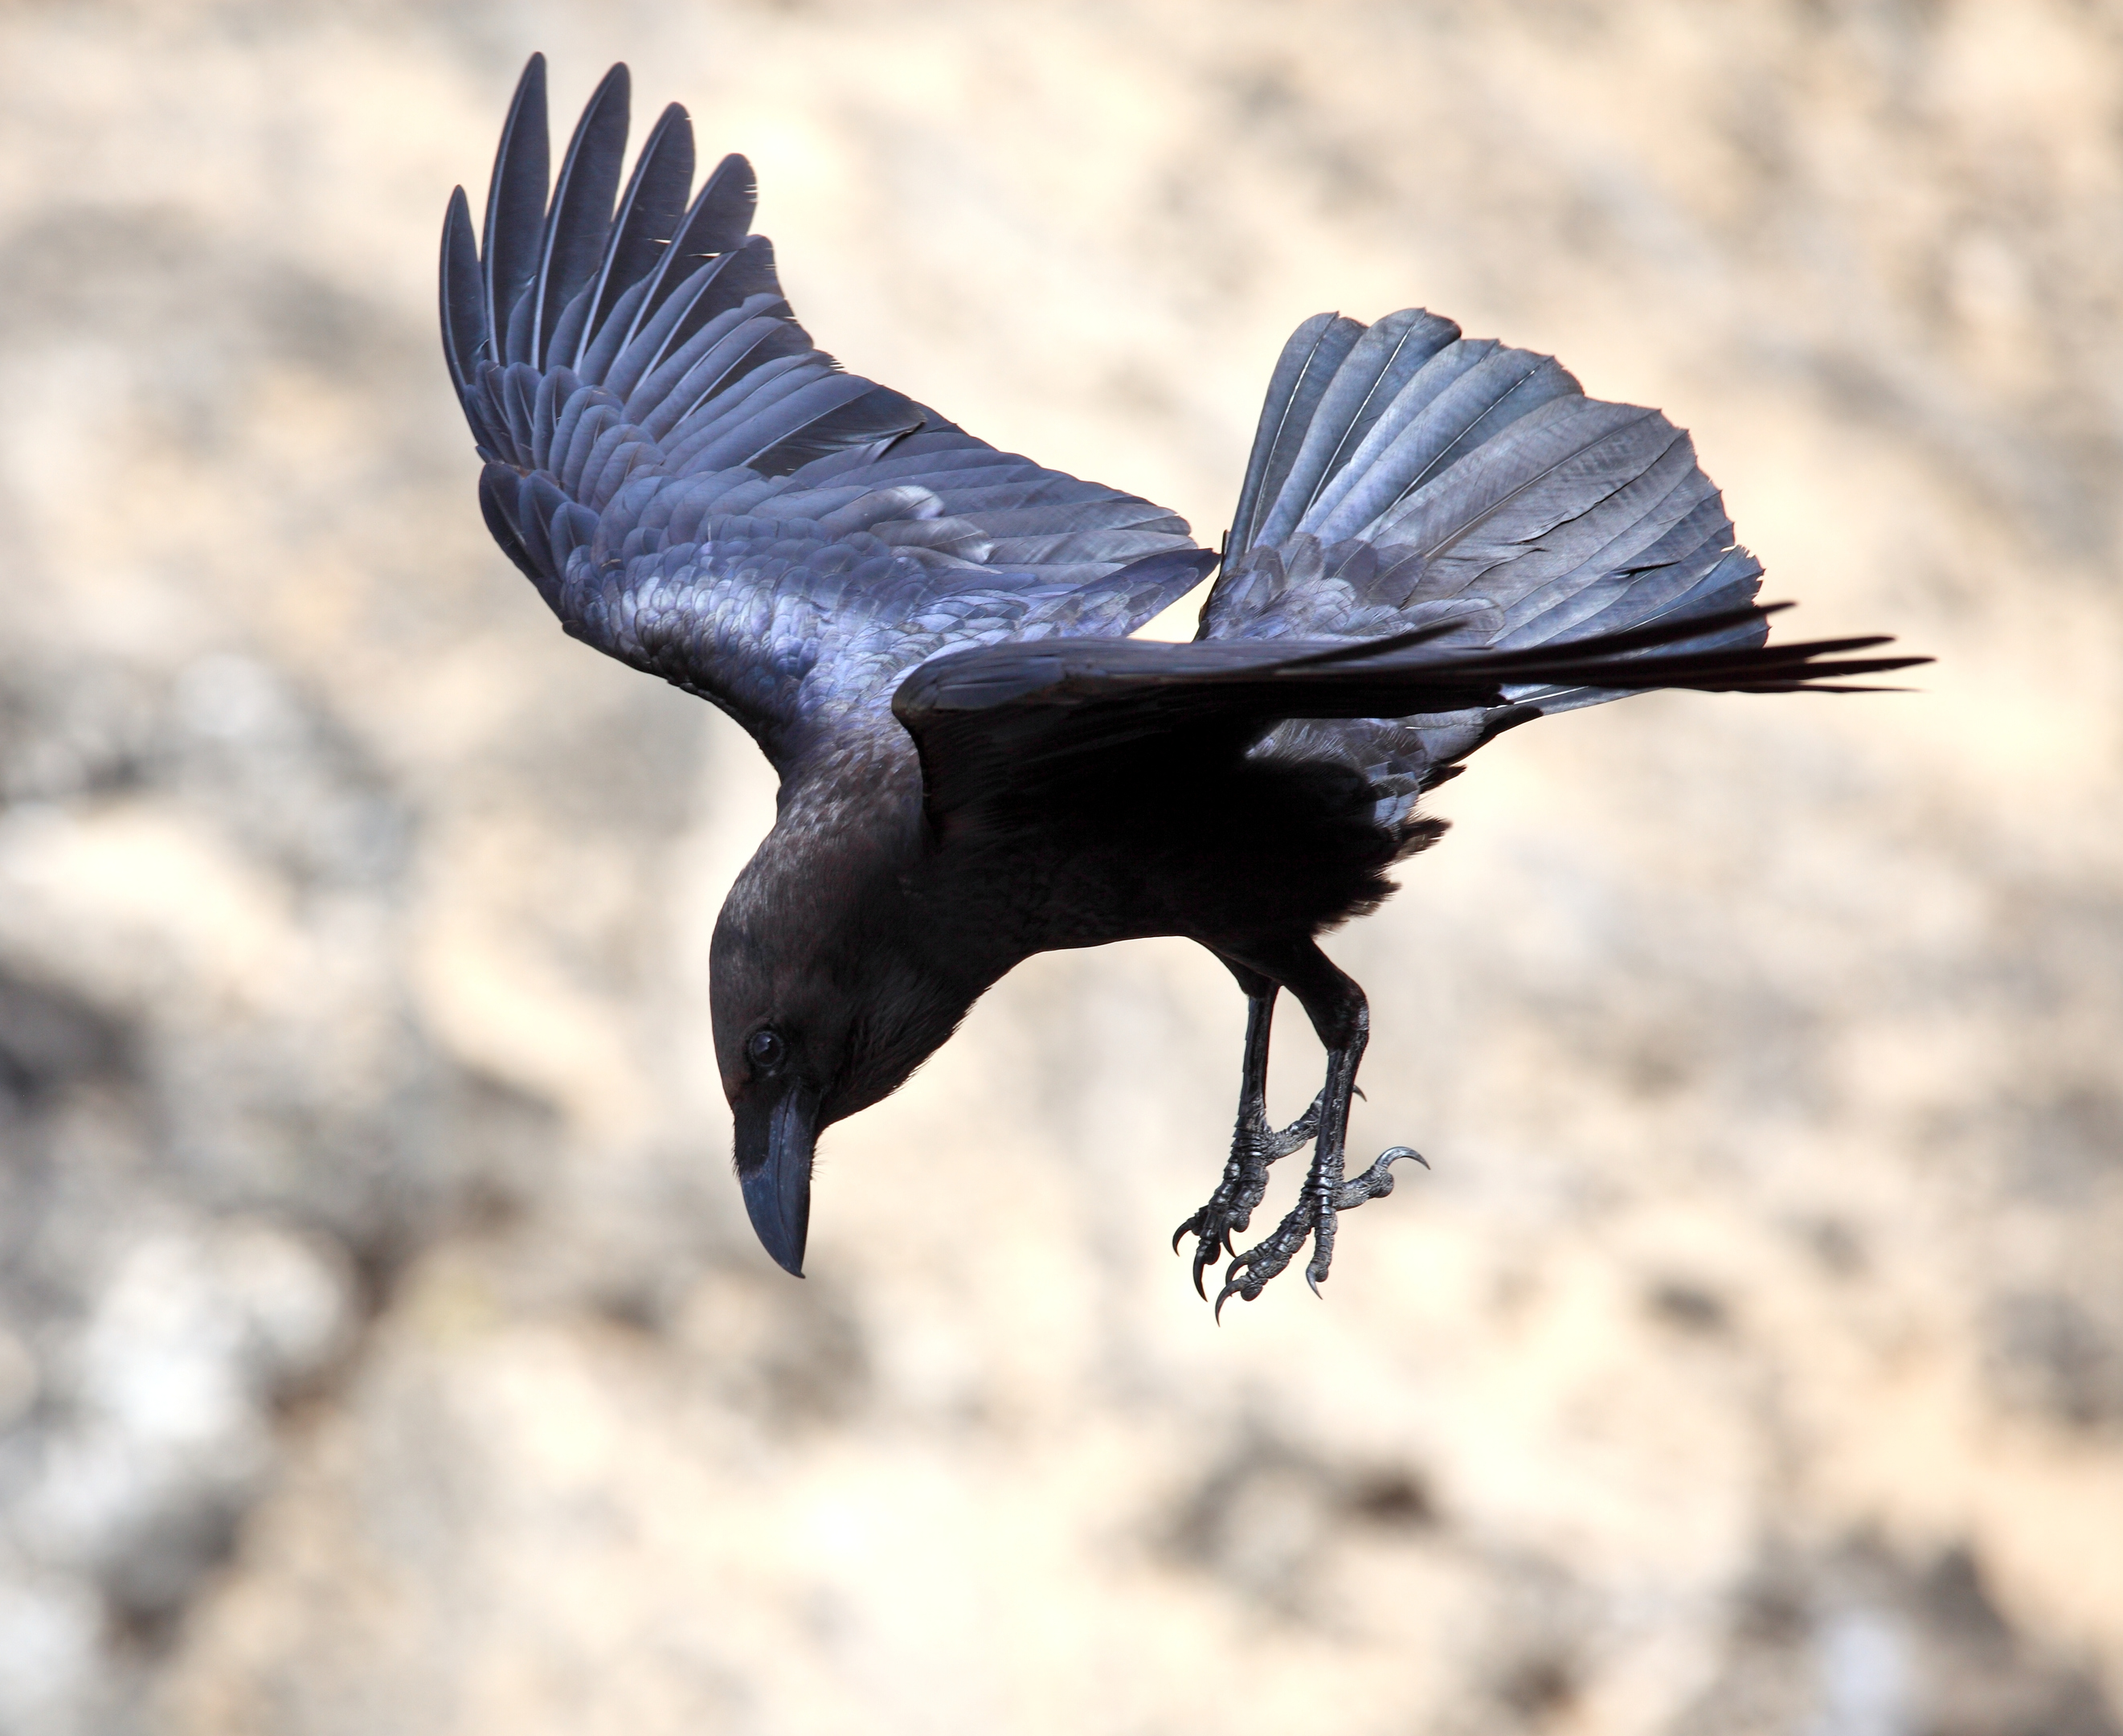 Brown-necked raven, Corvus ruficollis, in flight